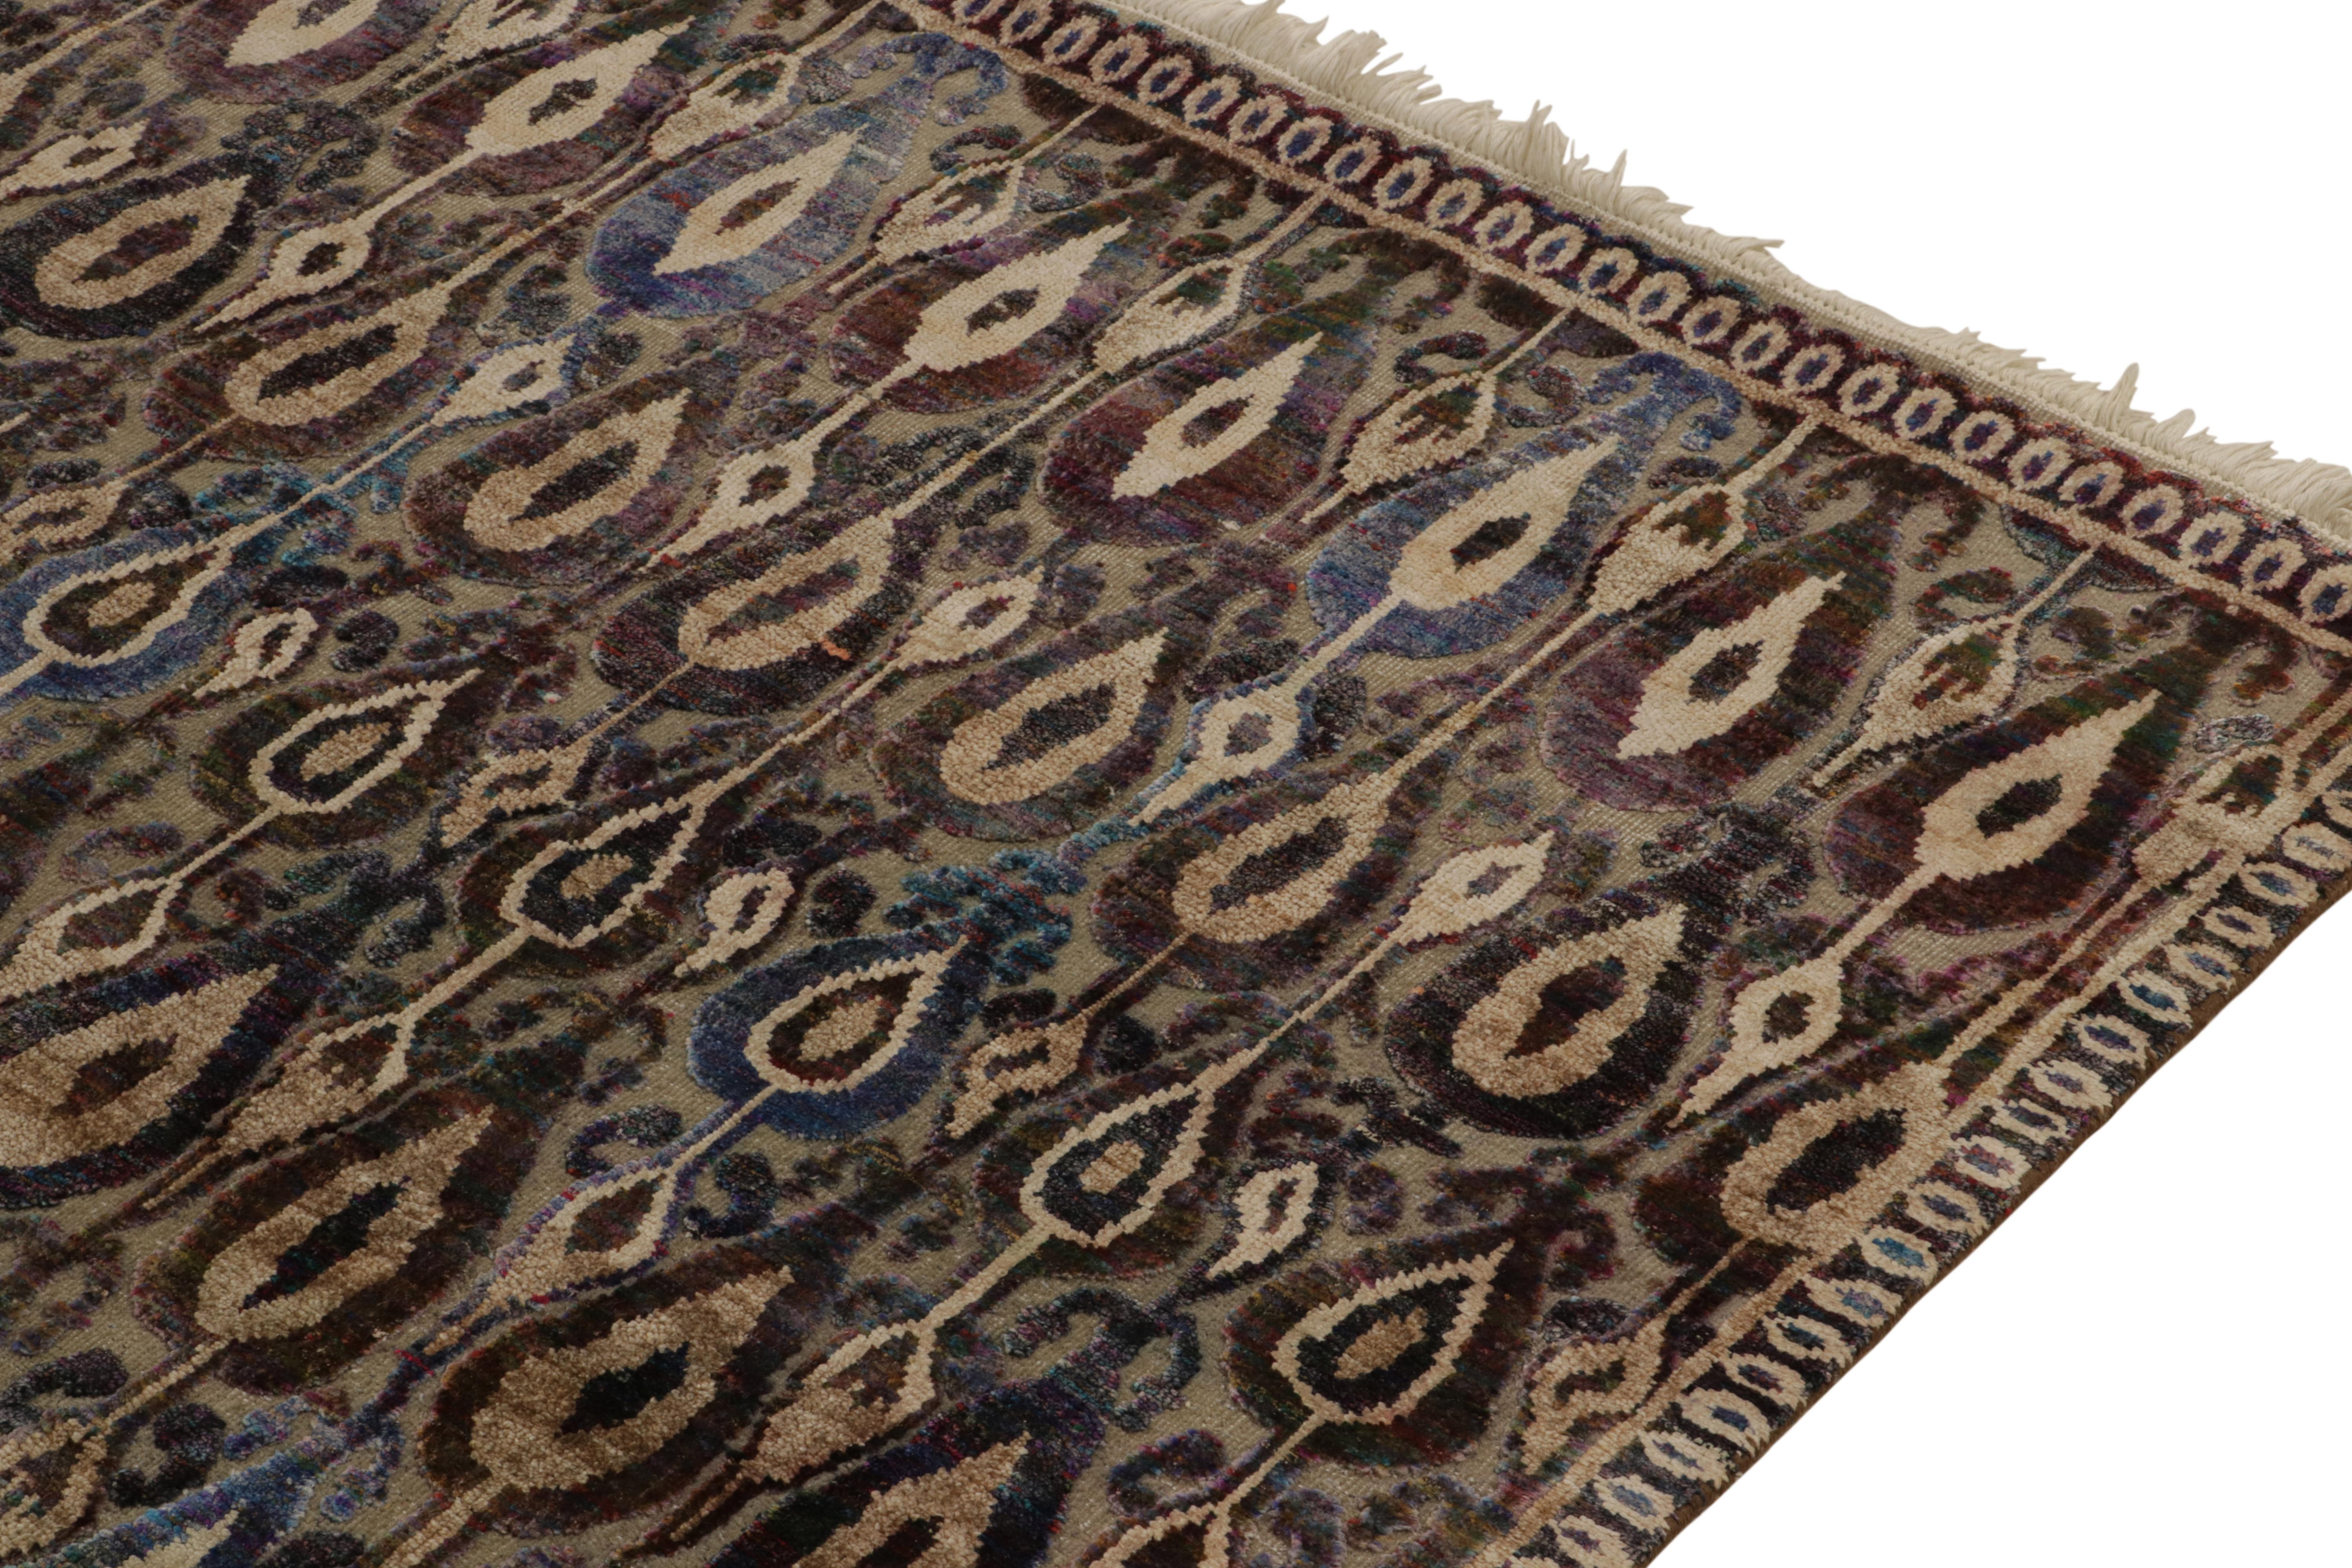 Rug & Kilim's Classic Style Teppich in Beige-Braun, Rot und Blau mit Ikats-Muster (Handgeknüpft) im Angebot